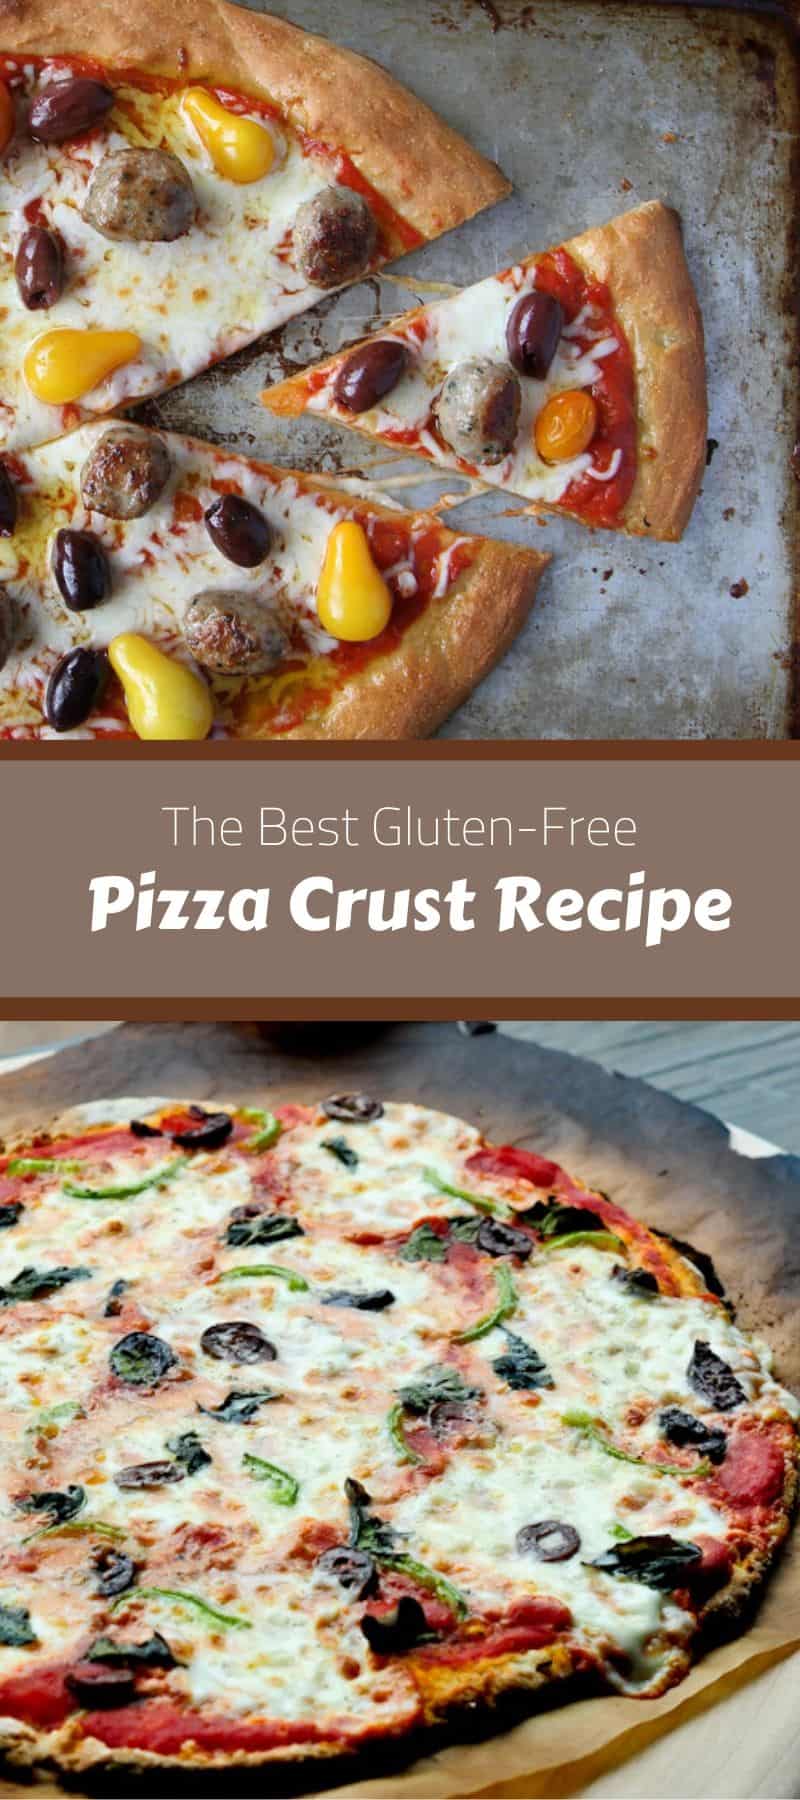 The Best Gluten-Free Pizza Crust Recipe 3